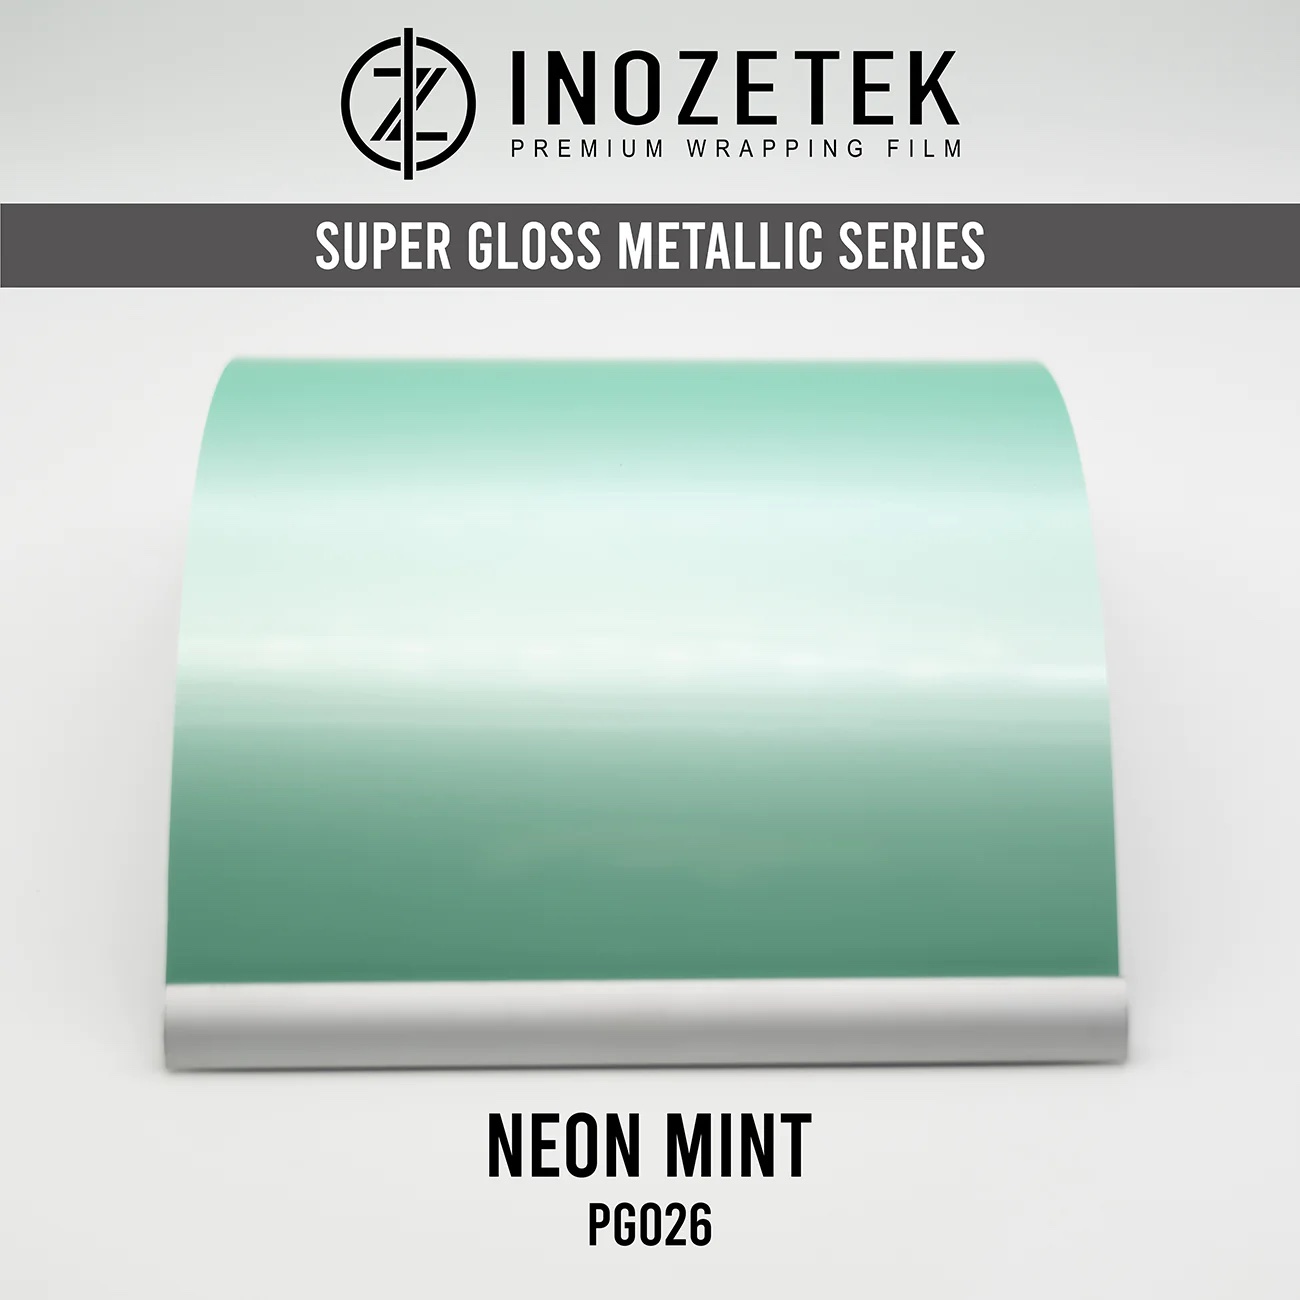 Inzoteke Neon Mint Vinyl Wrap